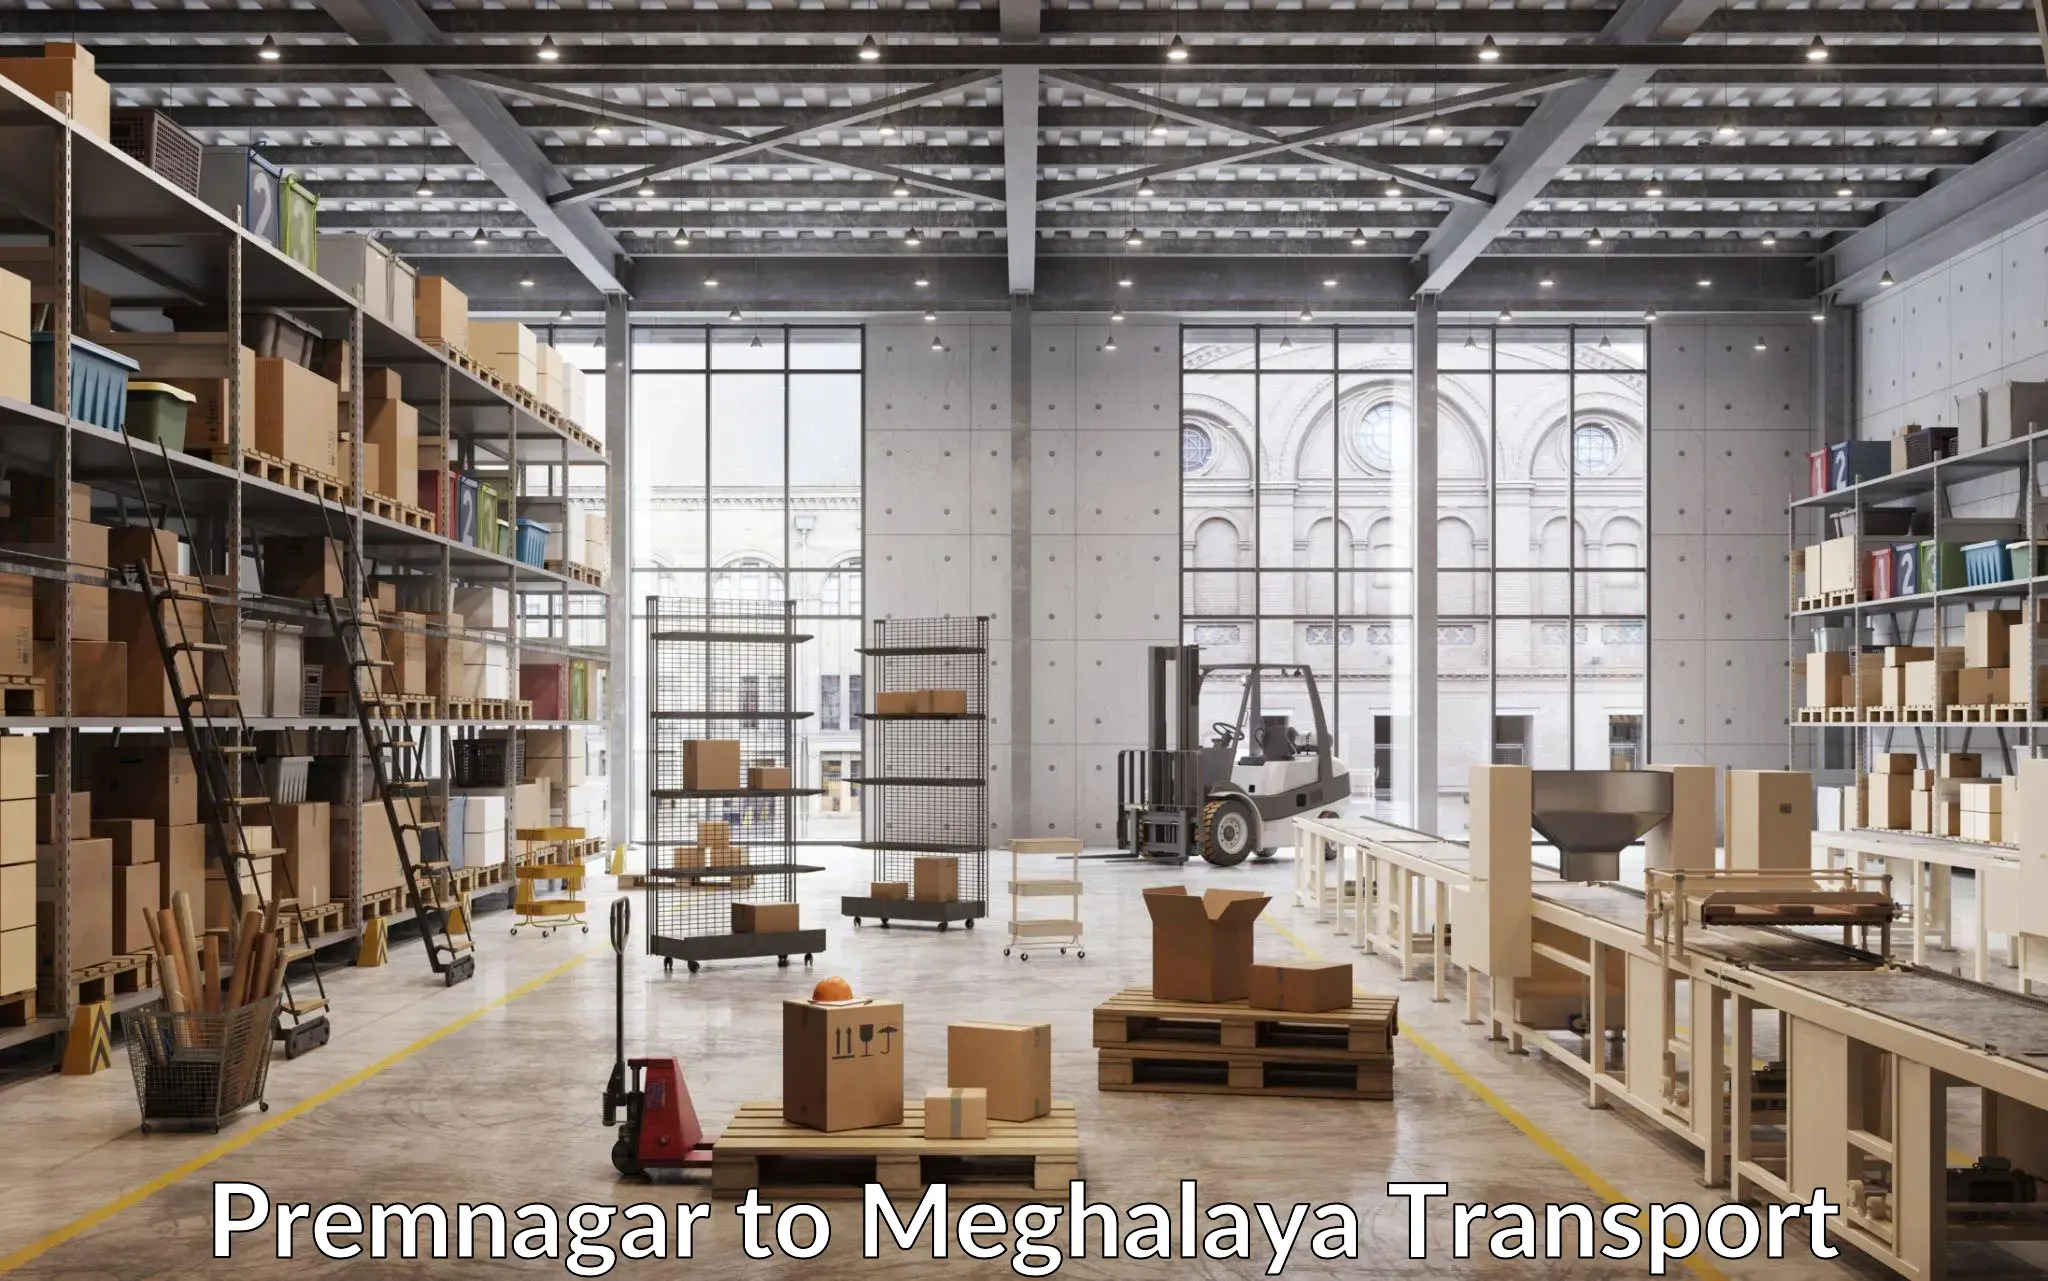 Commercial transport service Premnagar to Meghalaya